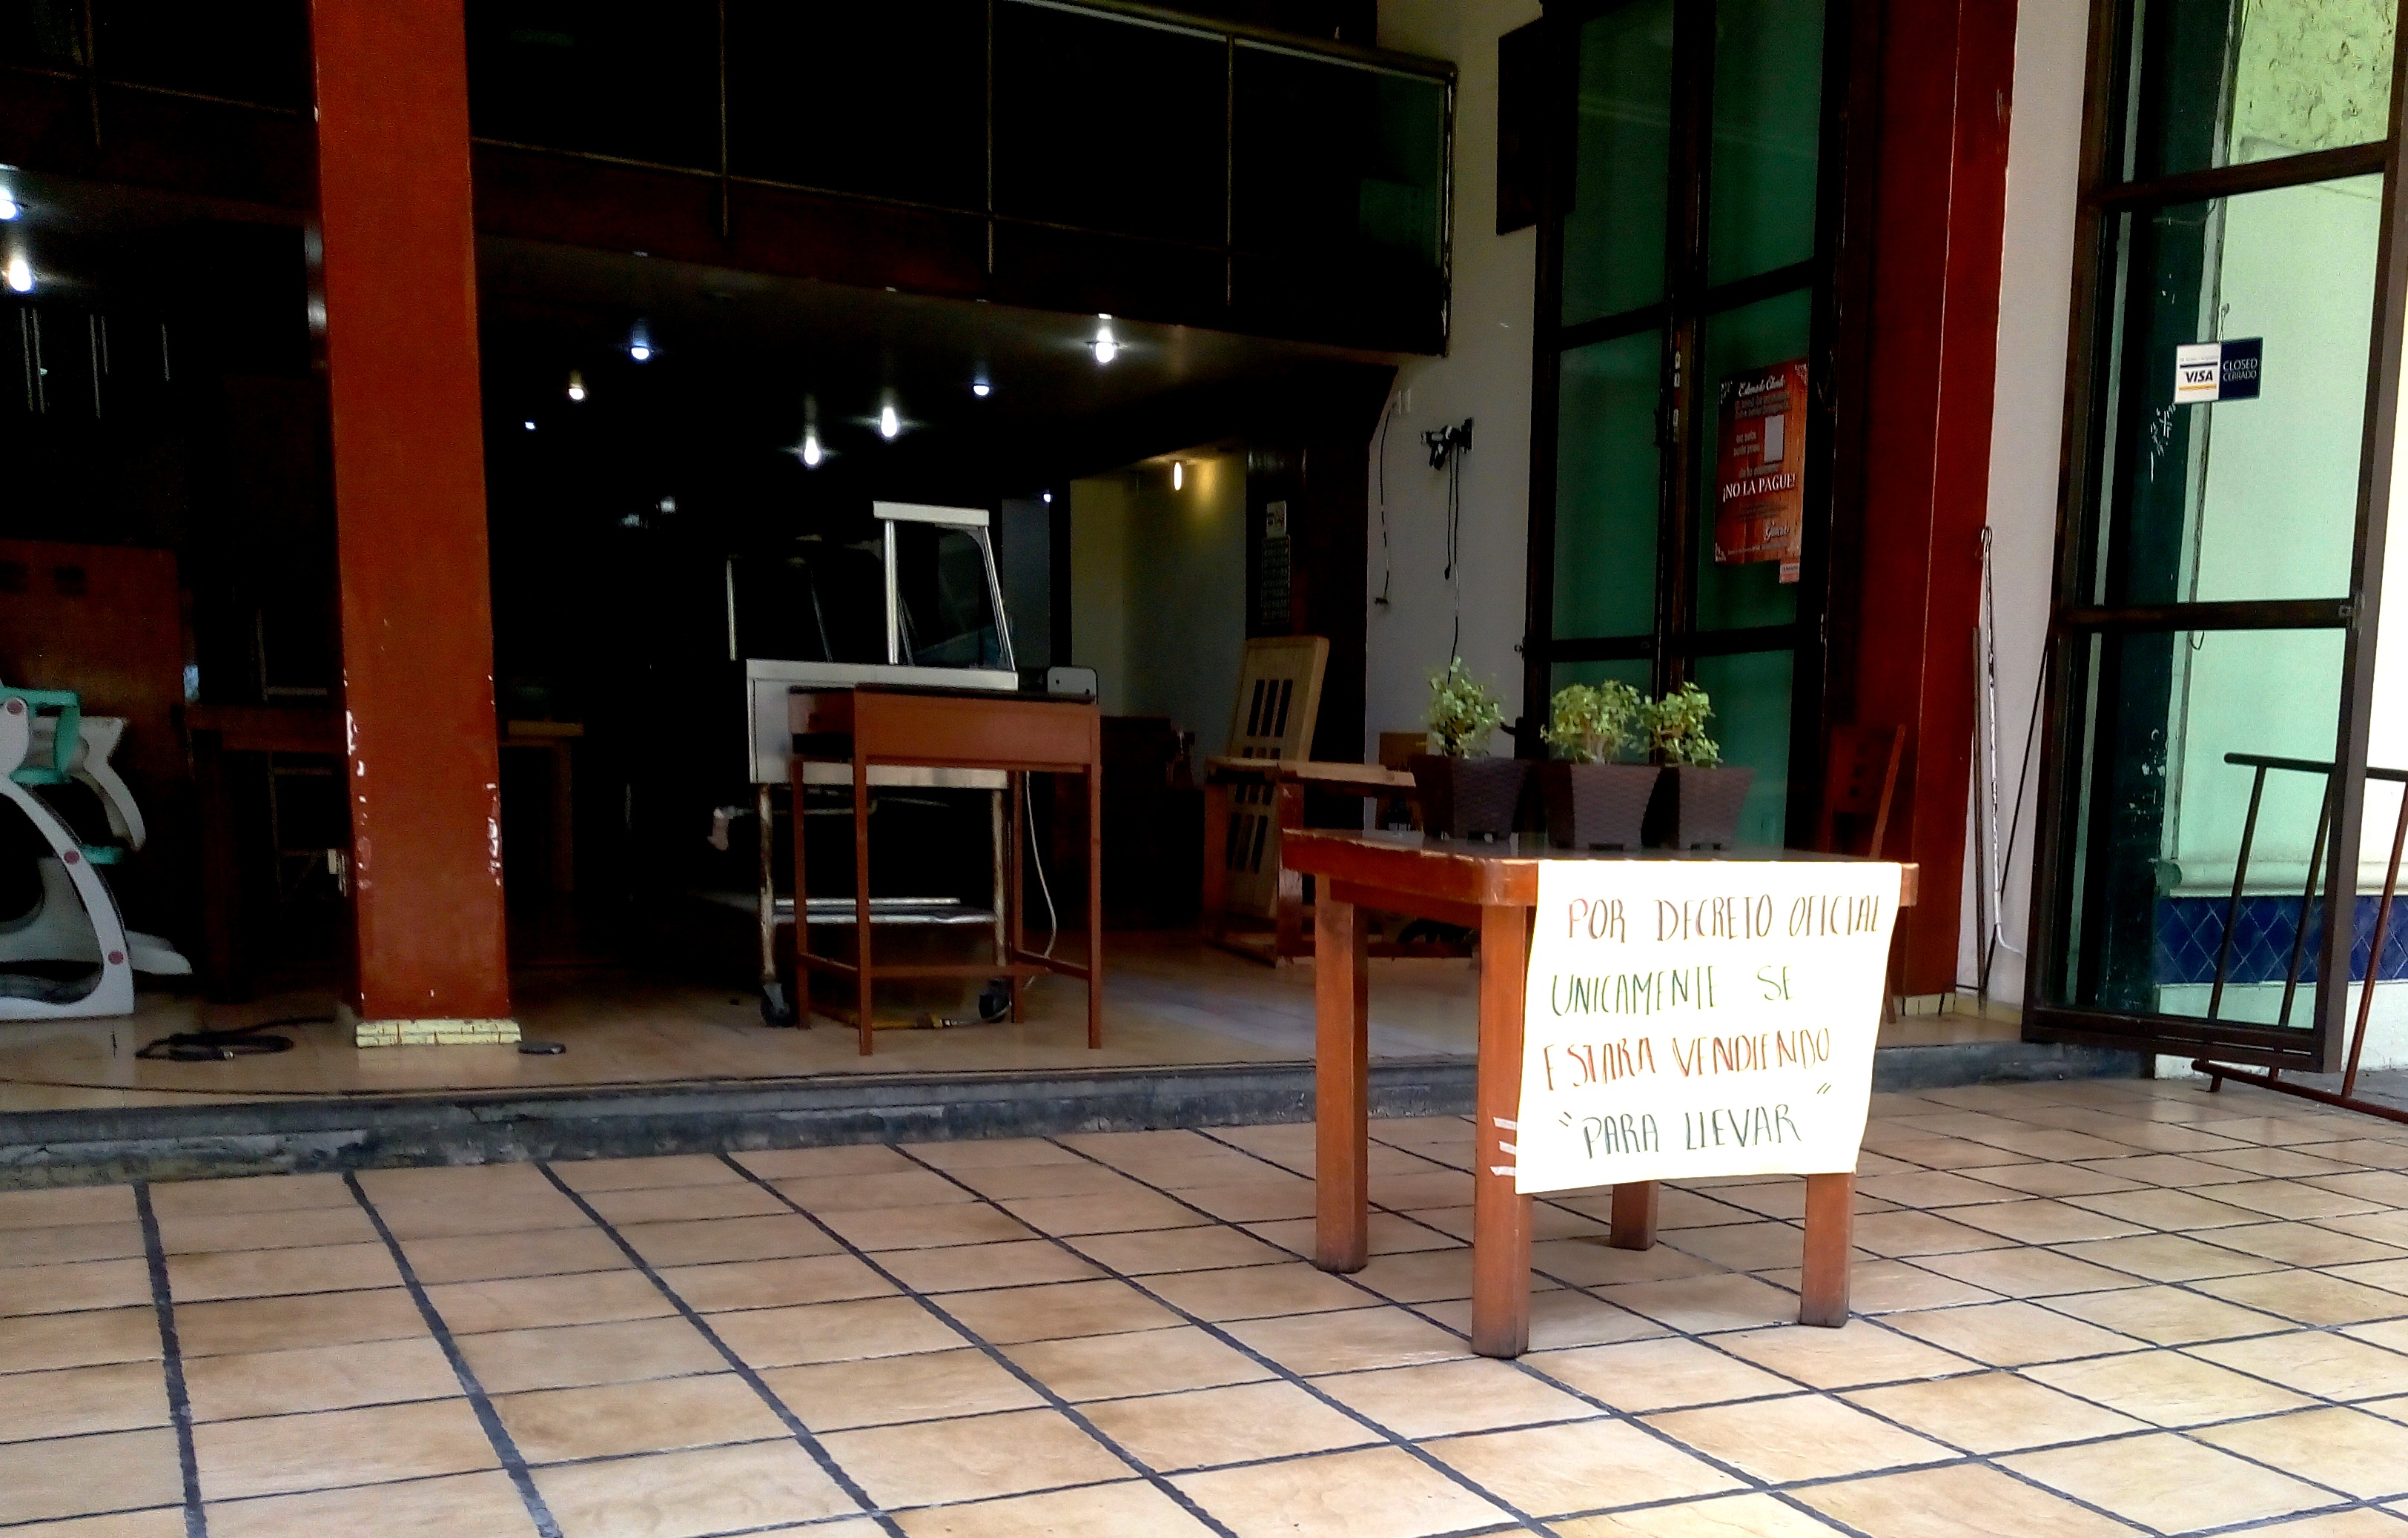 Restauranteros de Tehuacán reapertura acatando restricciones